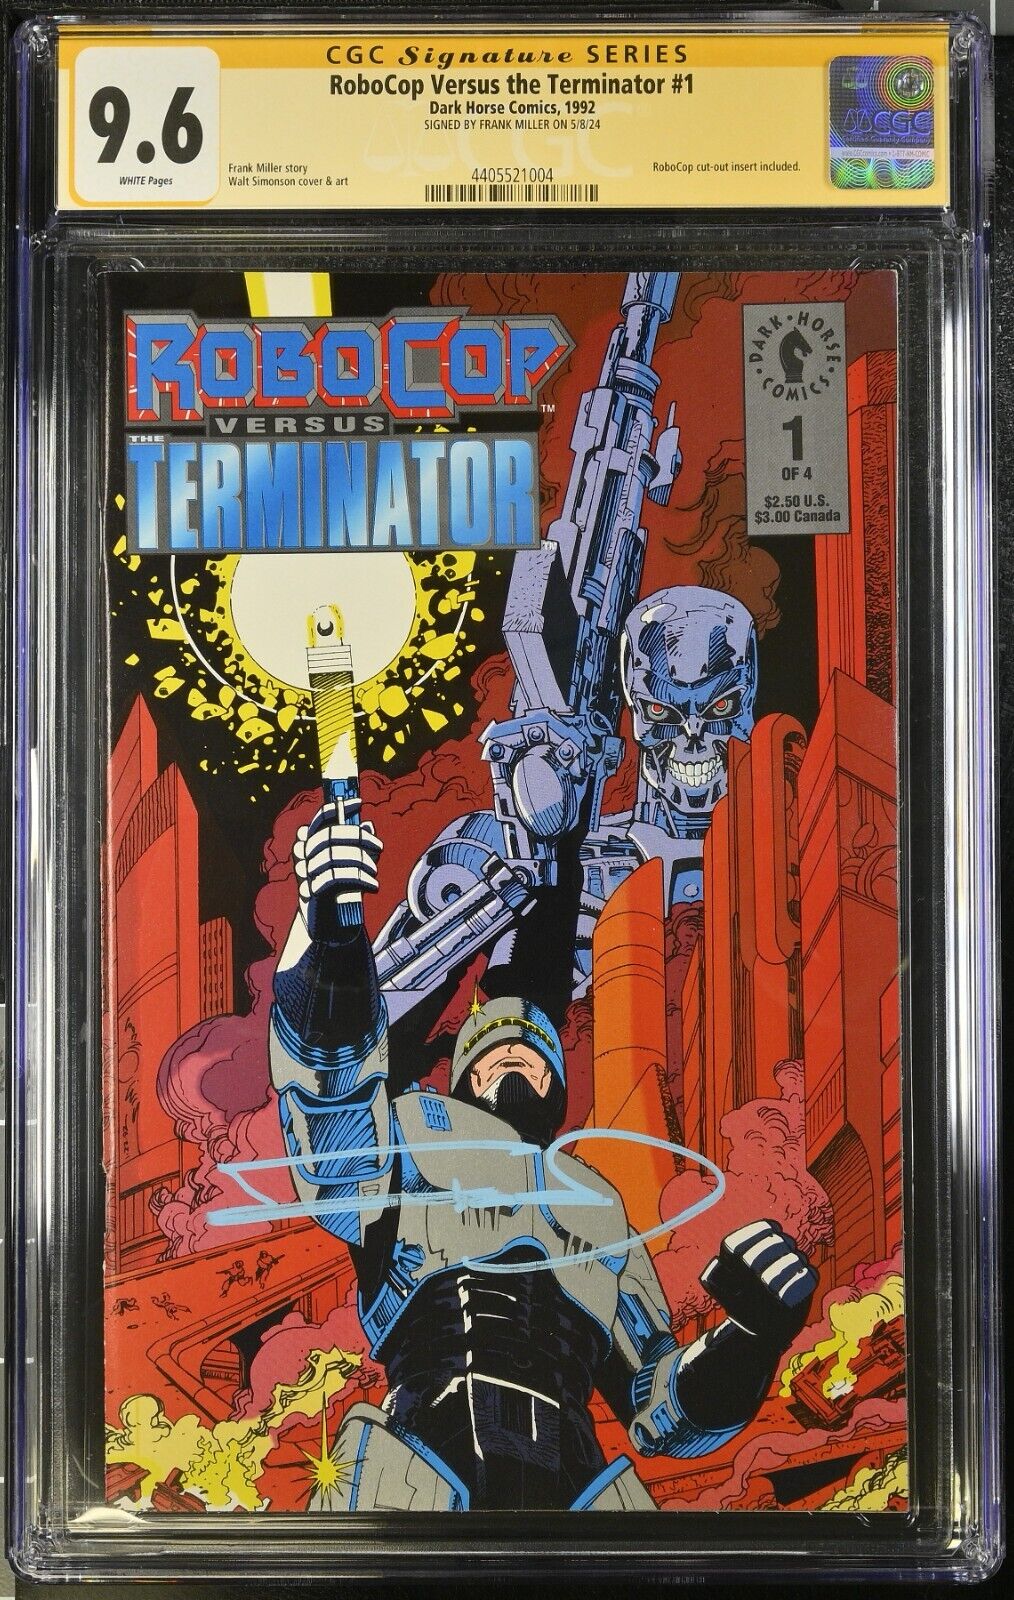 RoboCop Versus Terminator #1 CGC SS 9.6 Signed by Frank Miller Dark Horse 1992